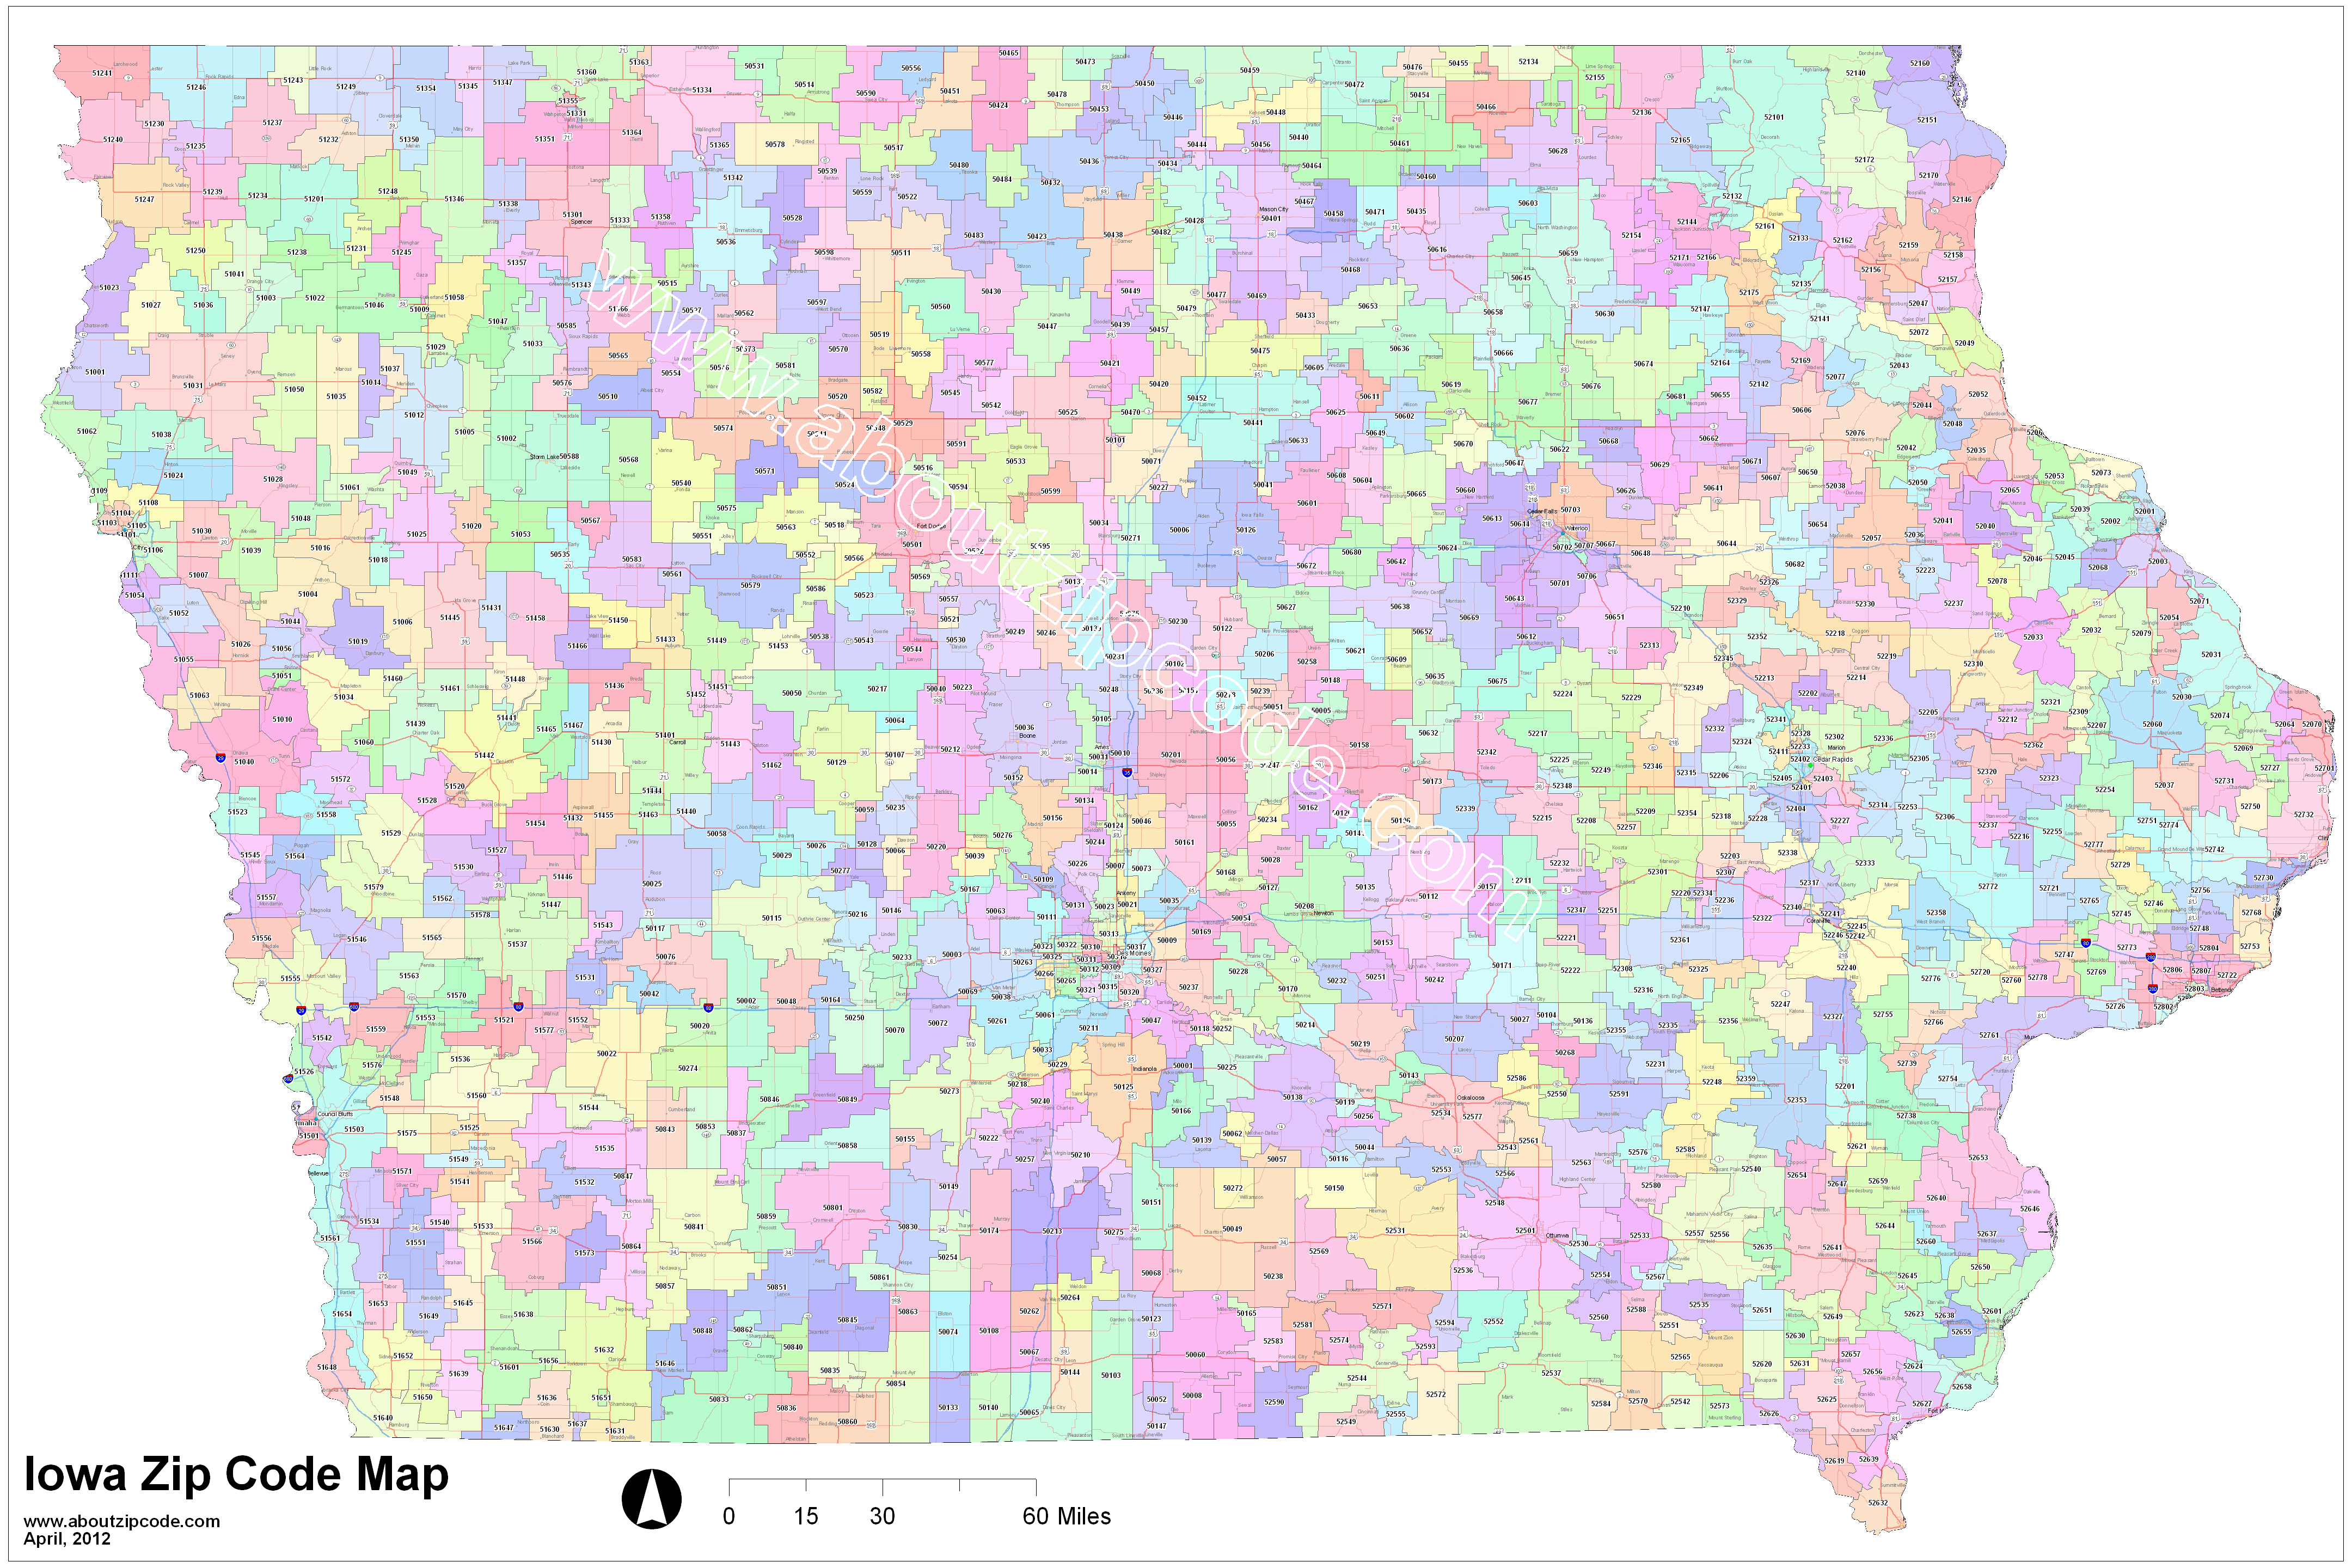 Iowa Zip Code Map Free - United States Map